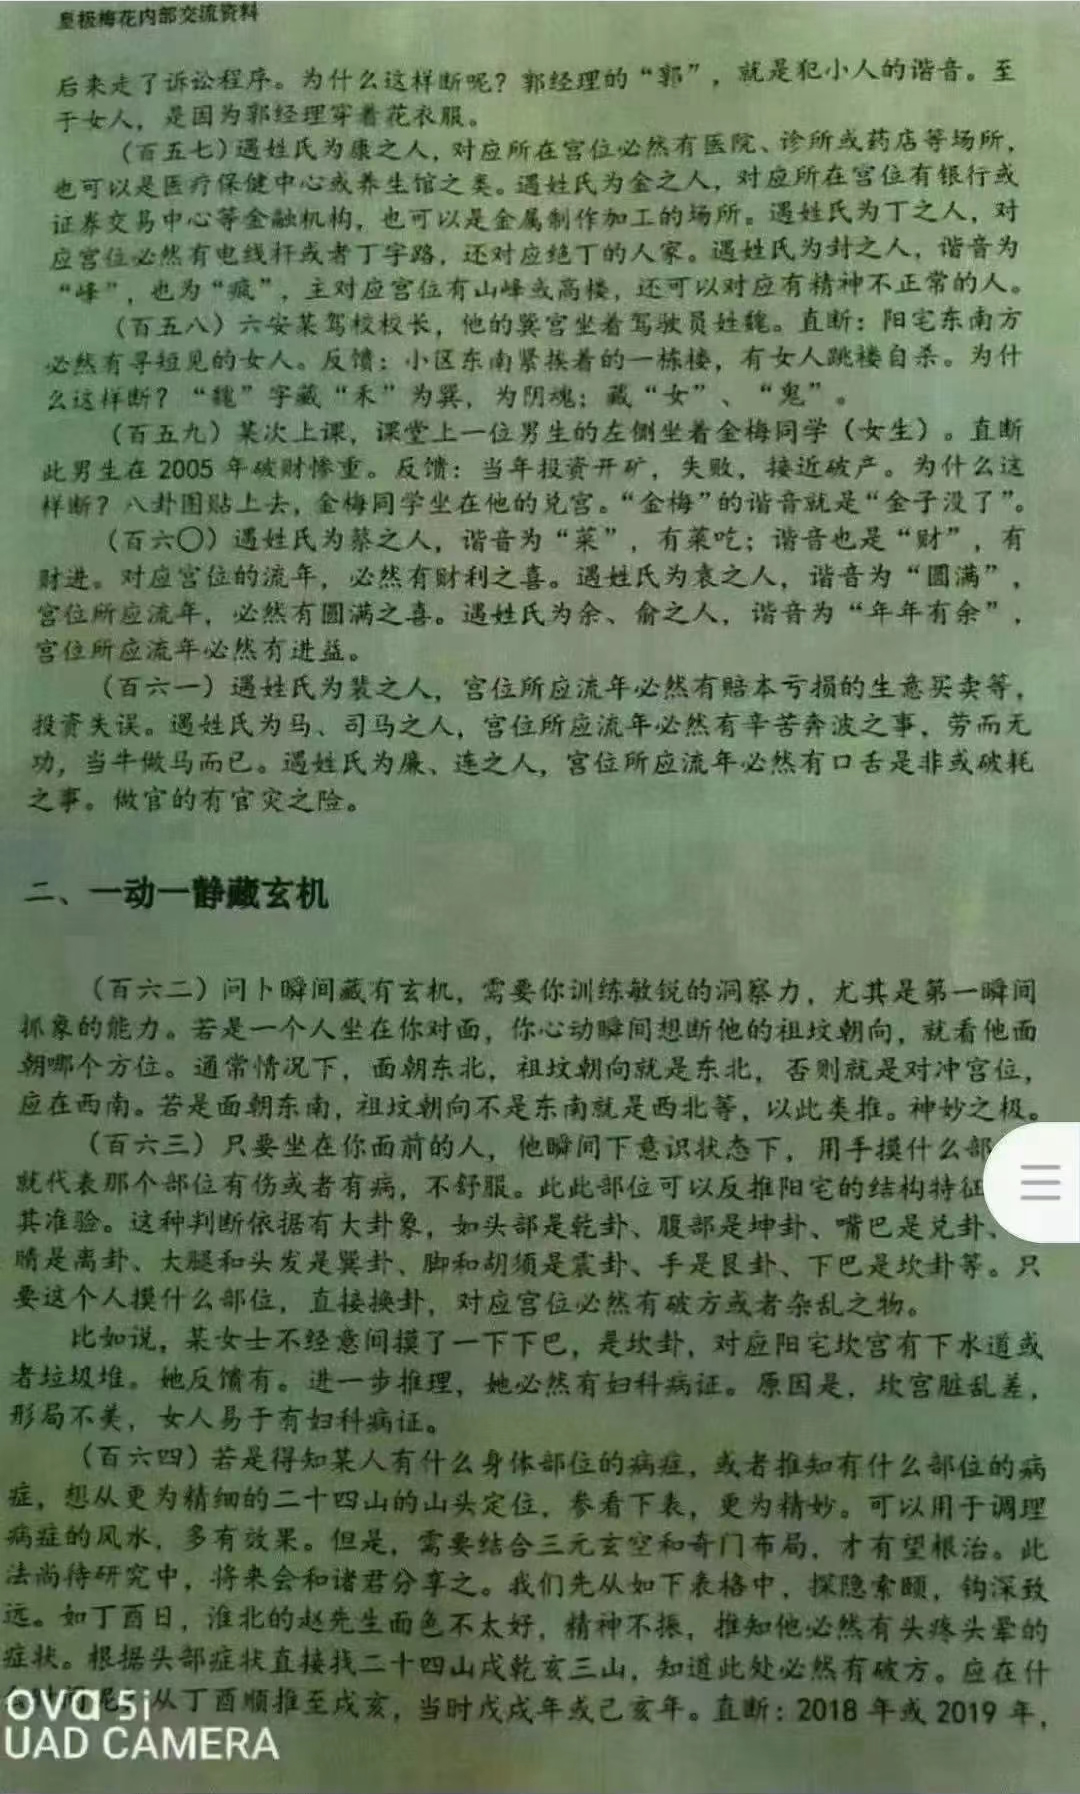 陈春林追风索影网授班讲义+答疑录音